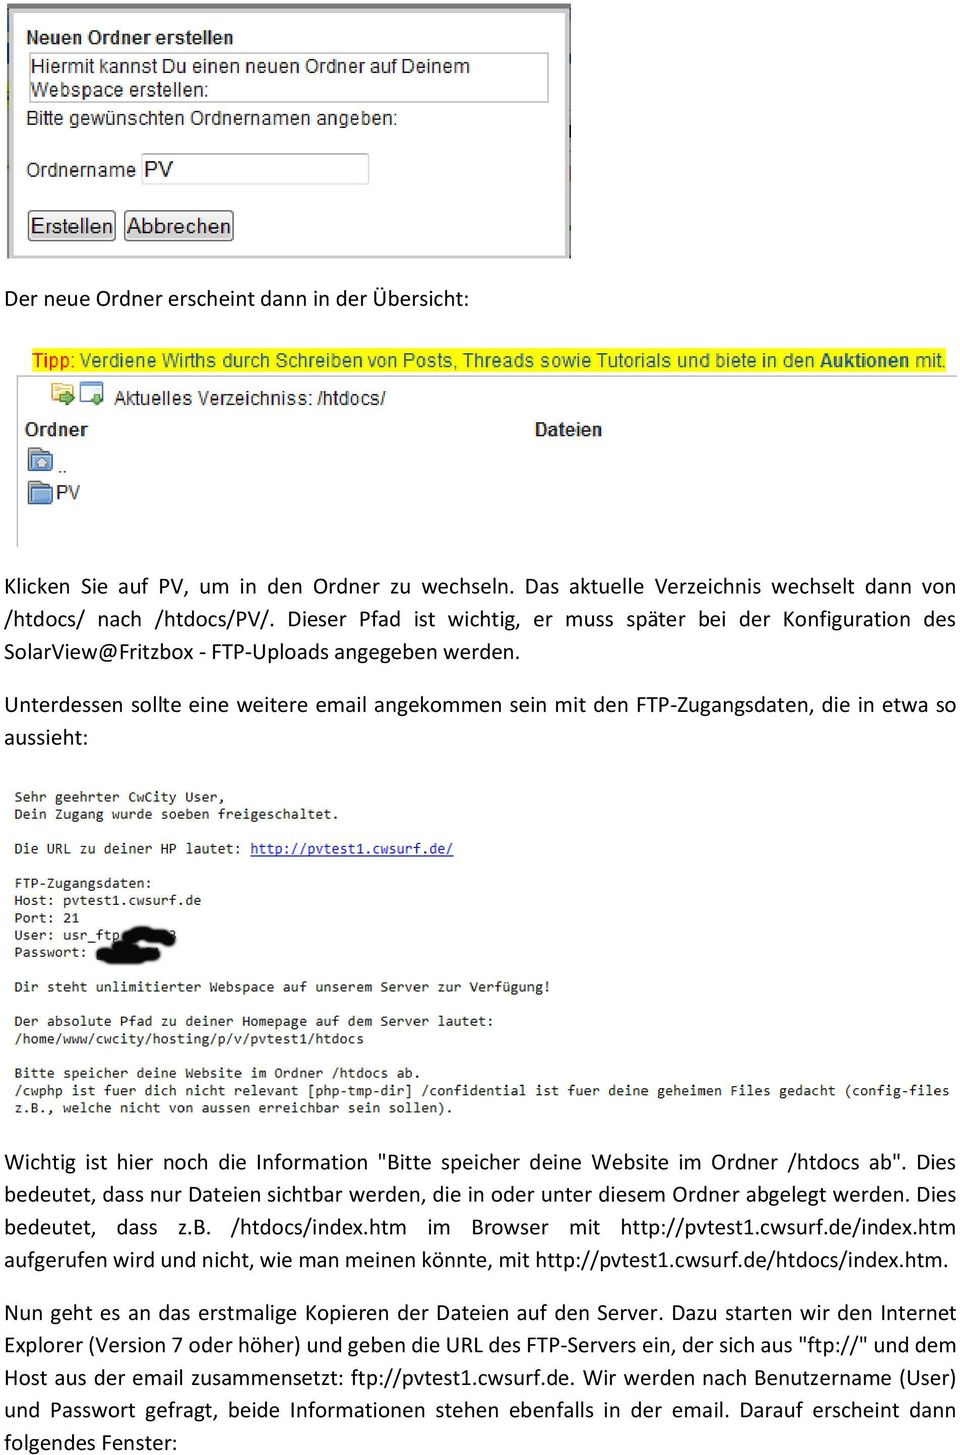 Unterdessen sollte eine weitere email angekommen sein mit den FTP-Zugangsdaten, die in etwa so aussieht: Wichtig ist hier noch die Information "Bitte speicher deine Website im Ordner /htdocs ab".